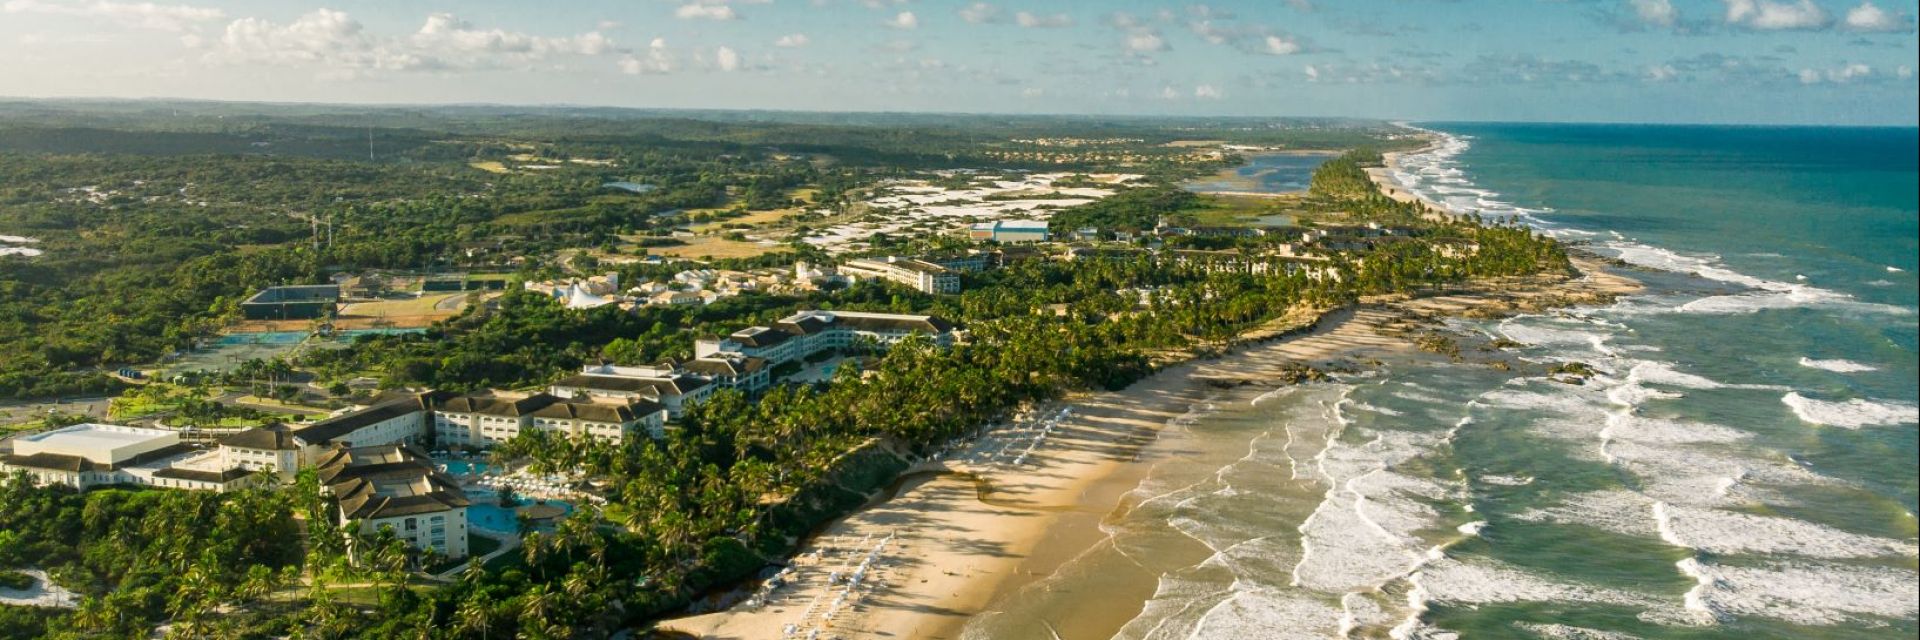 Costa do Sauípe: o que fazer para curtir o melhor da Bahia? 